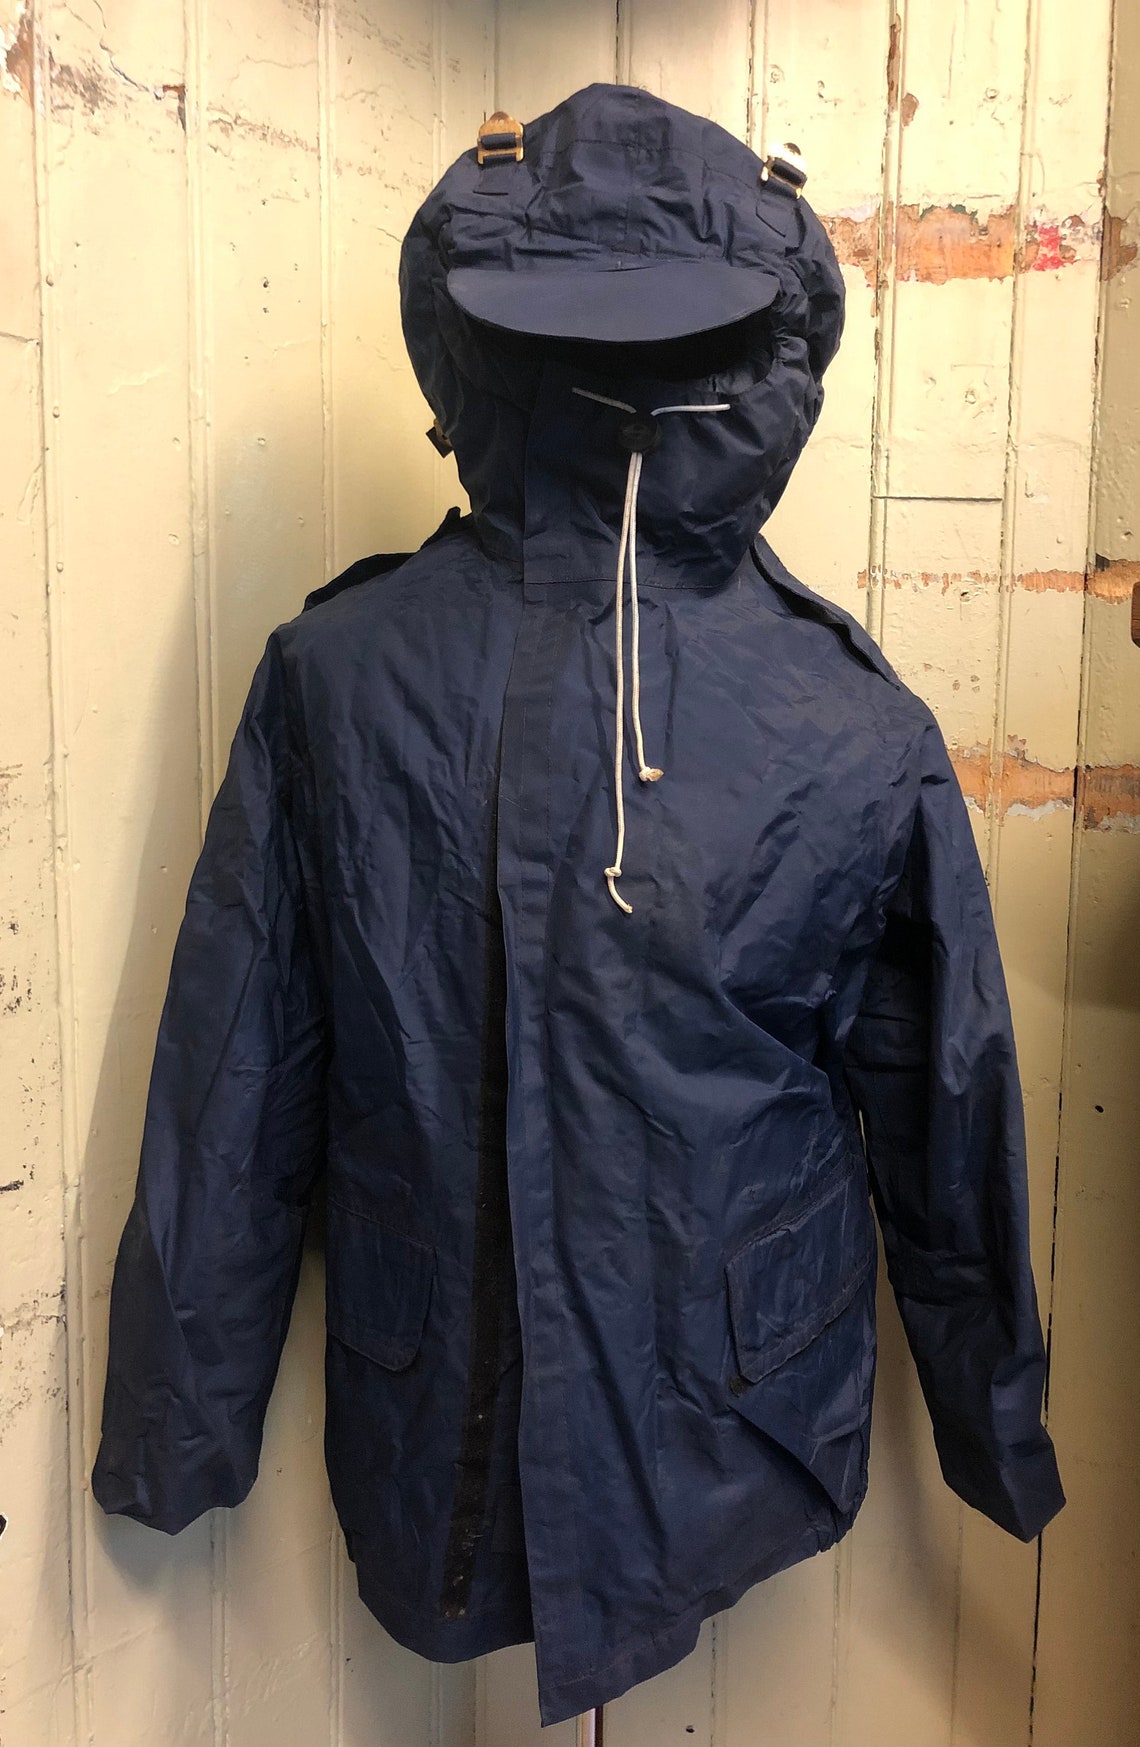 Vintage Royal Navy Mark III foul weather jacket size M Medium | Etsy